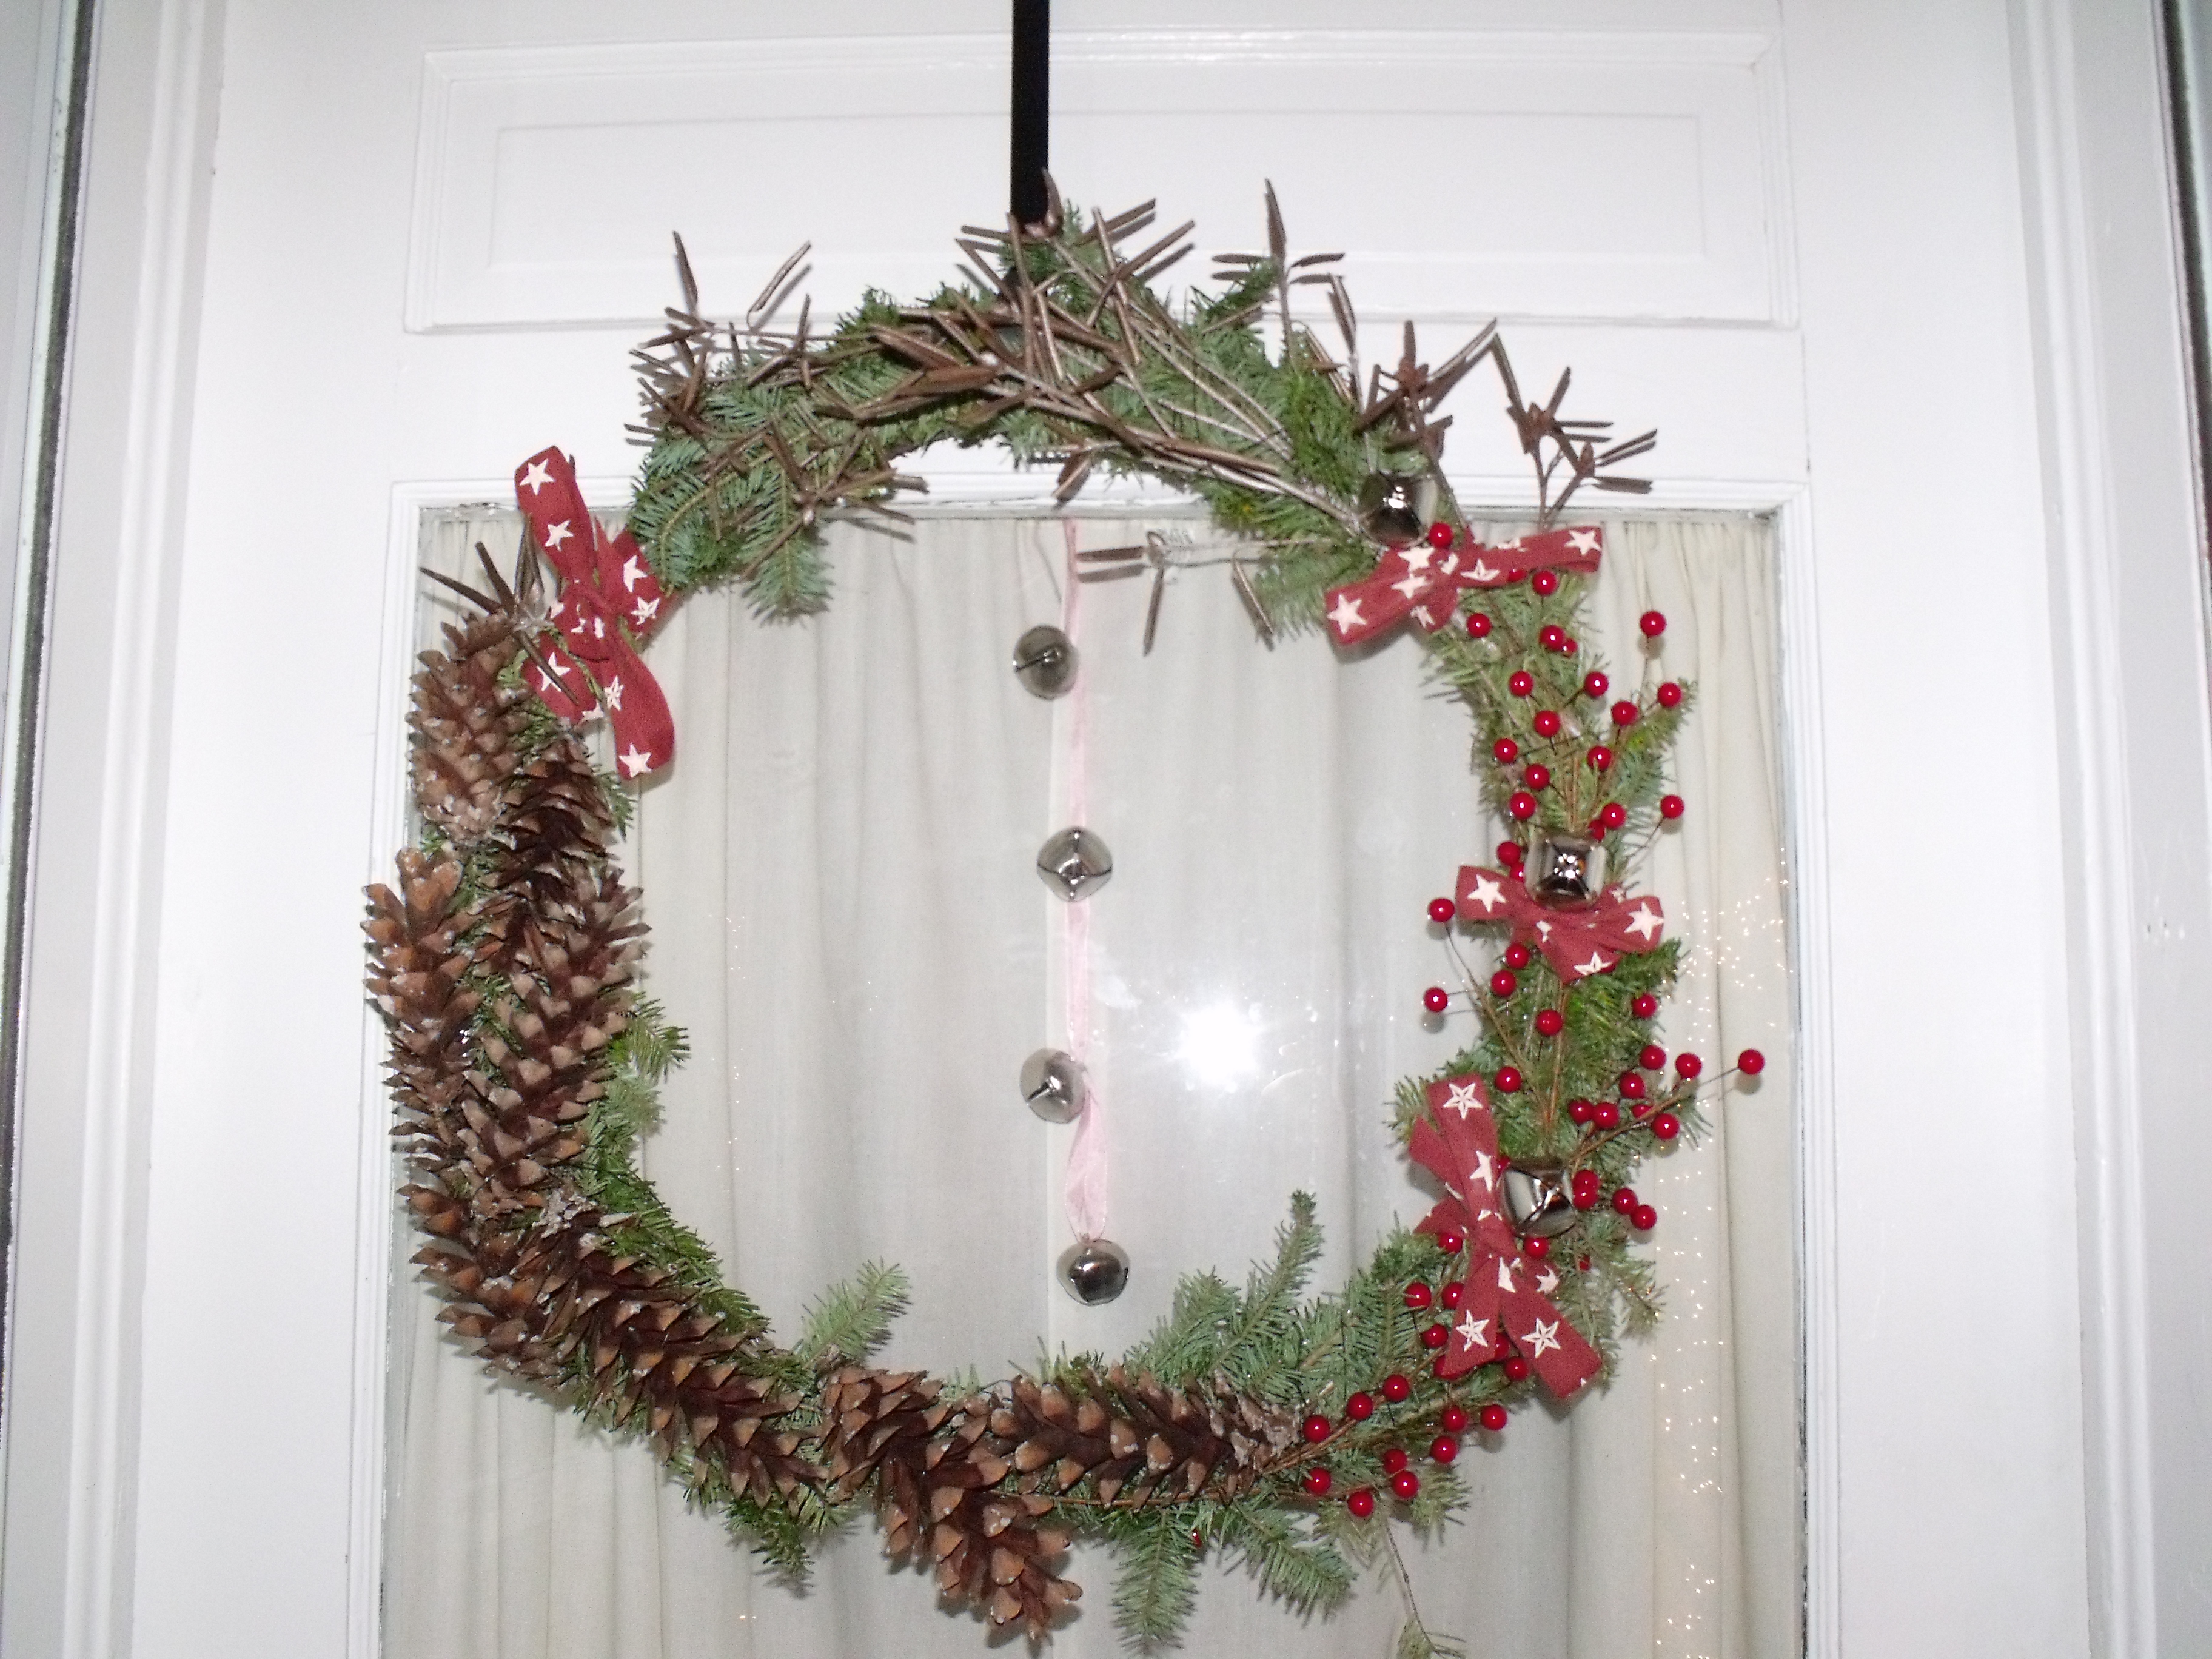 Tags: Handmade Wreath , Natural Pine Wreath , Pine Wreath